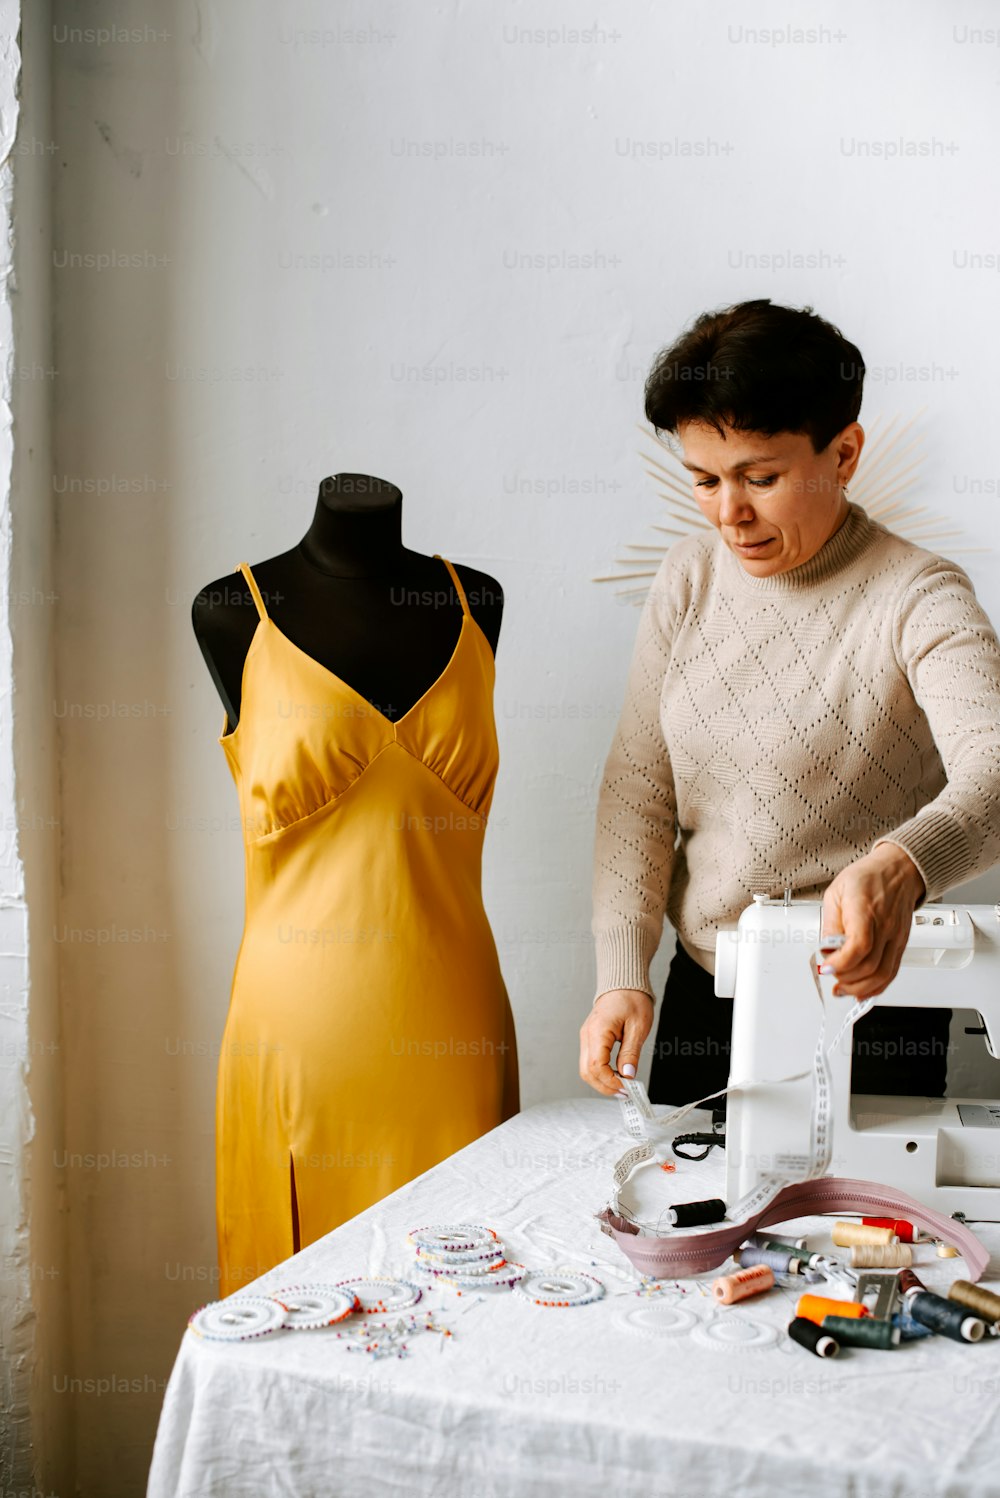 黄色いドレスを着た女性がドレ�スを作っている